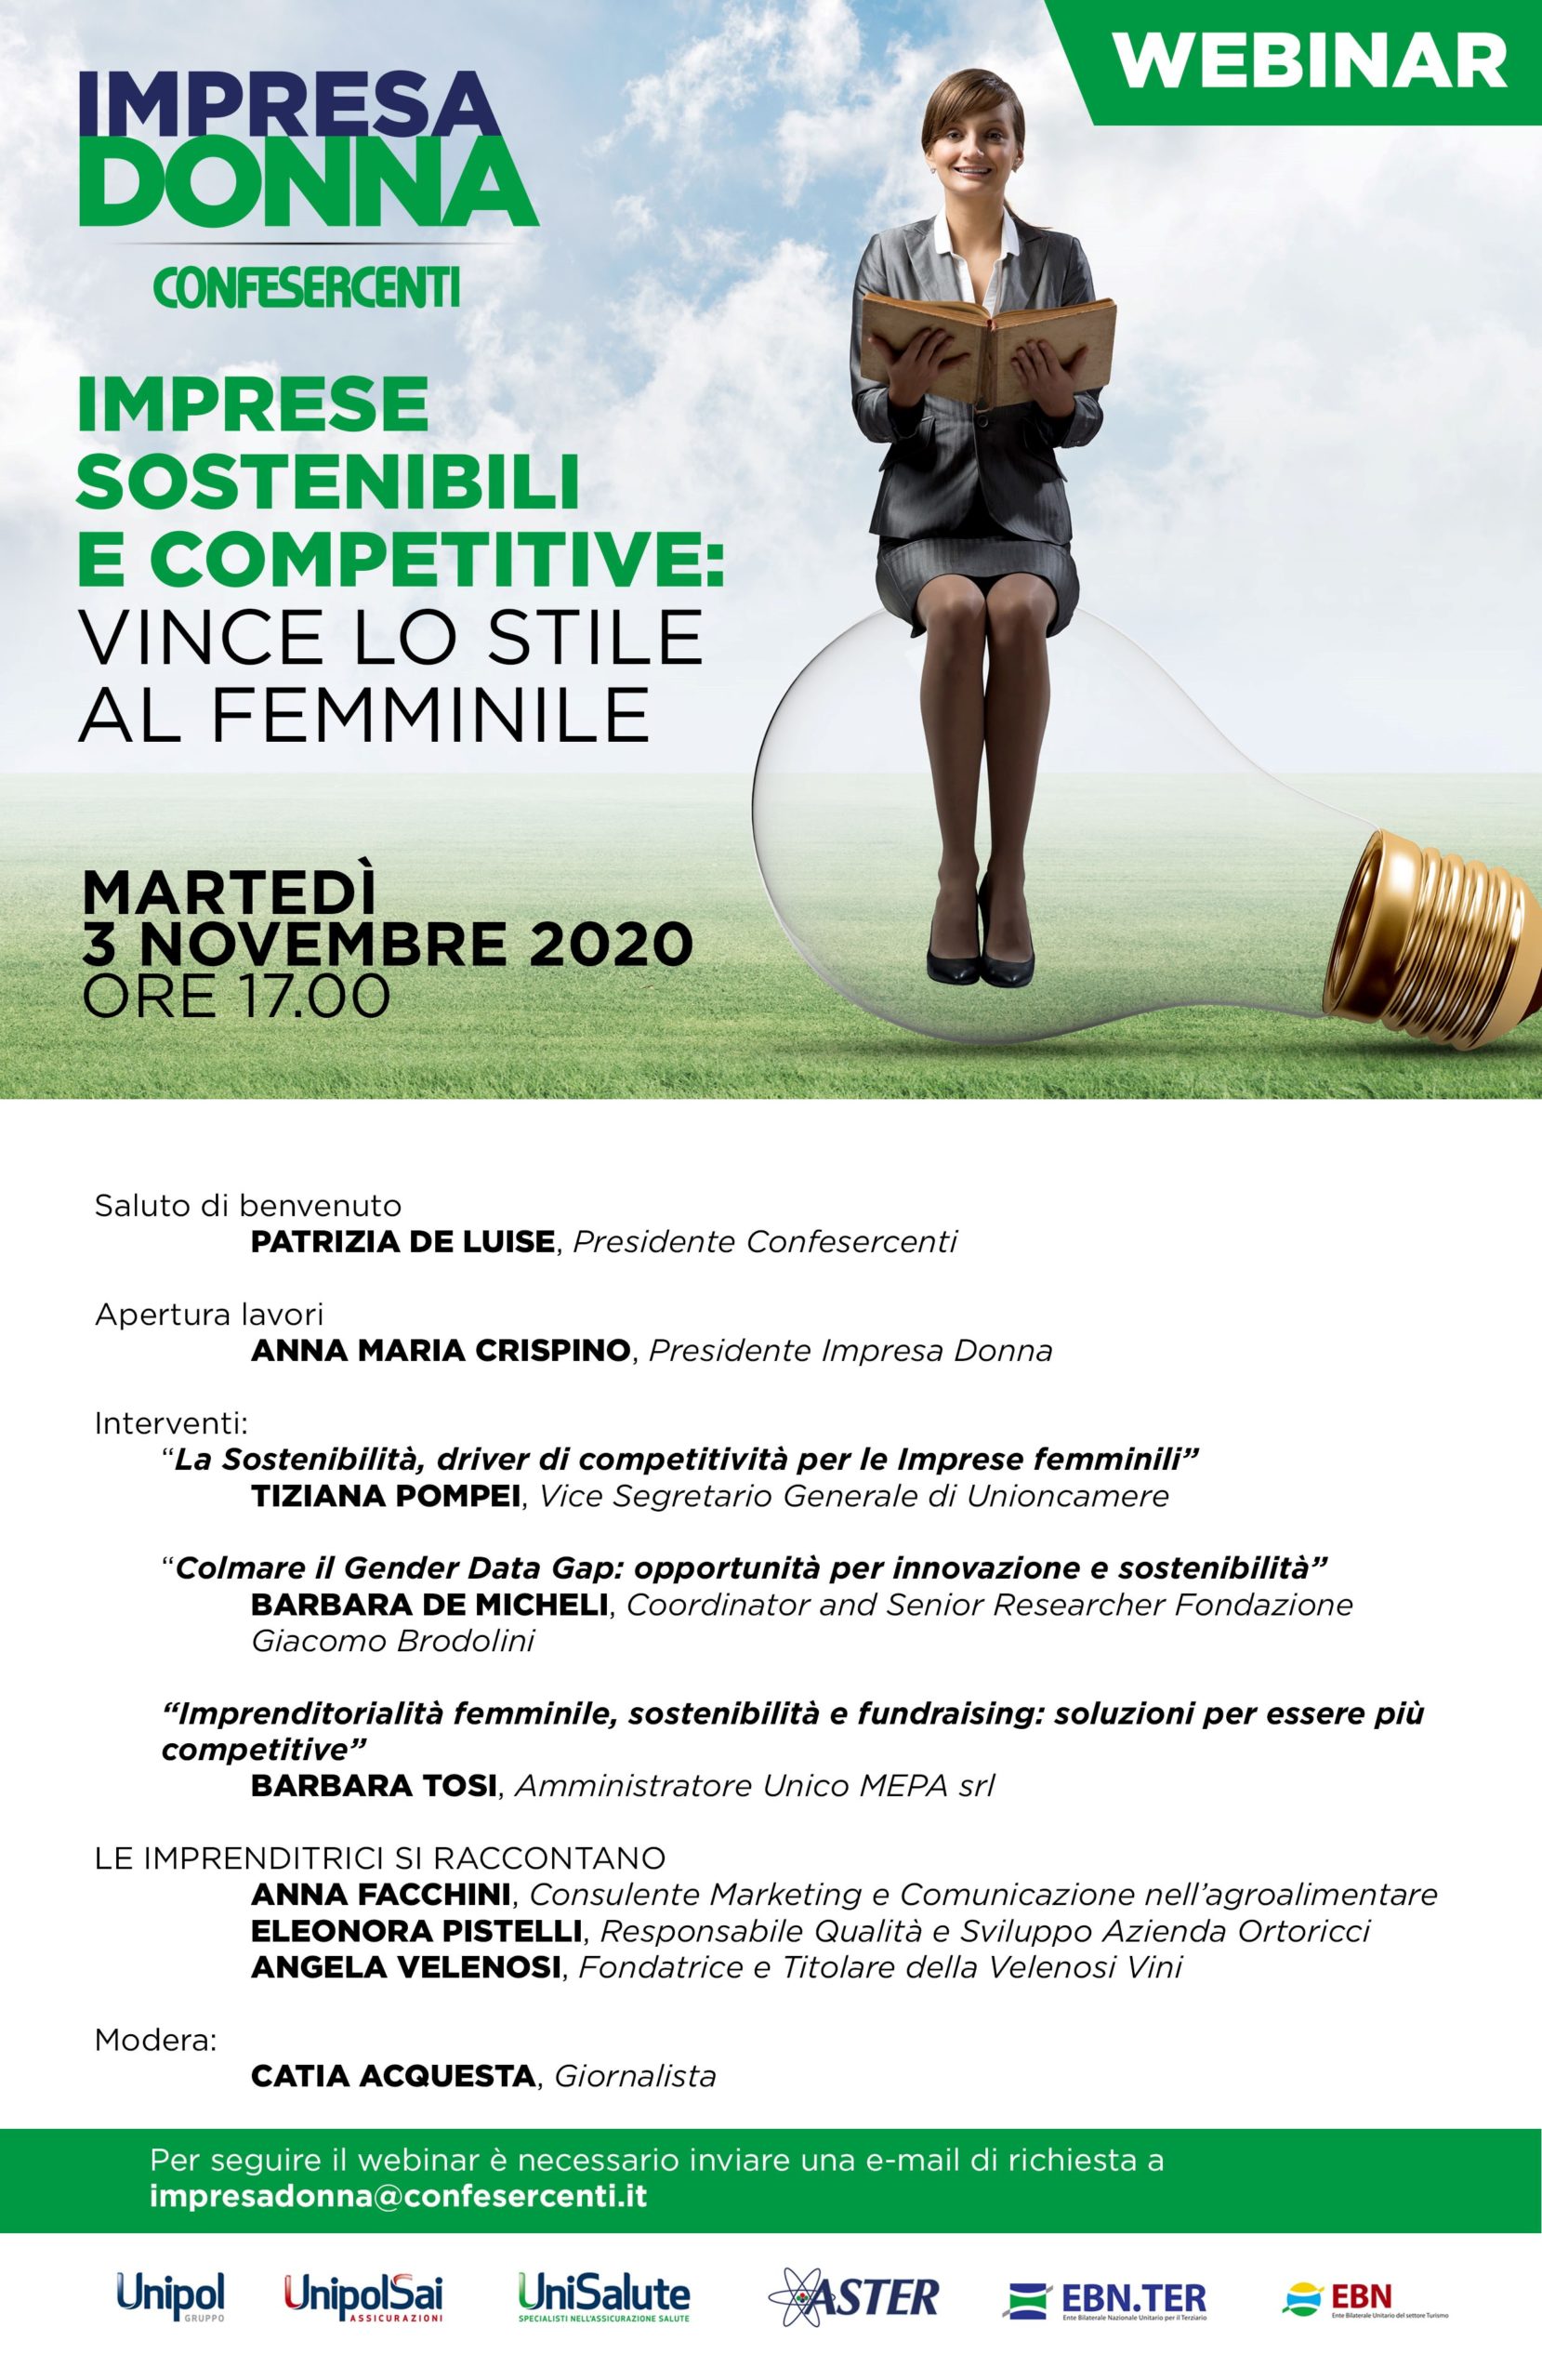 Impresa Donna Confesercenti, il 3 novembre il webinar “Imprese sostenibili e competitive: vince lo stile al femminile”